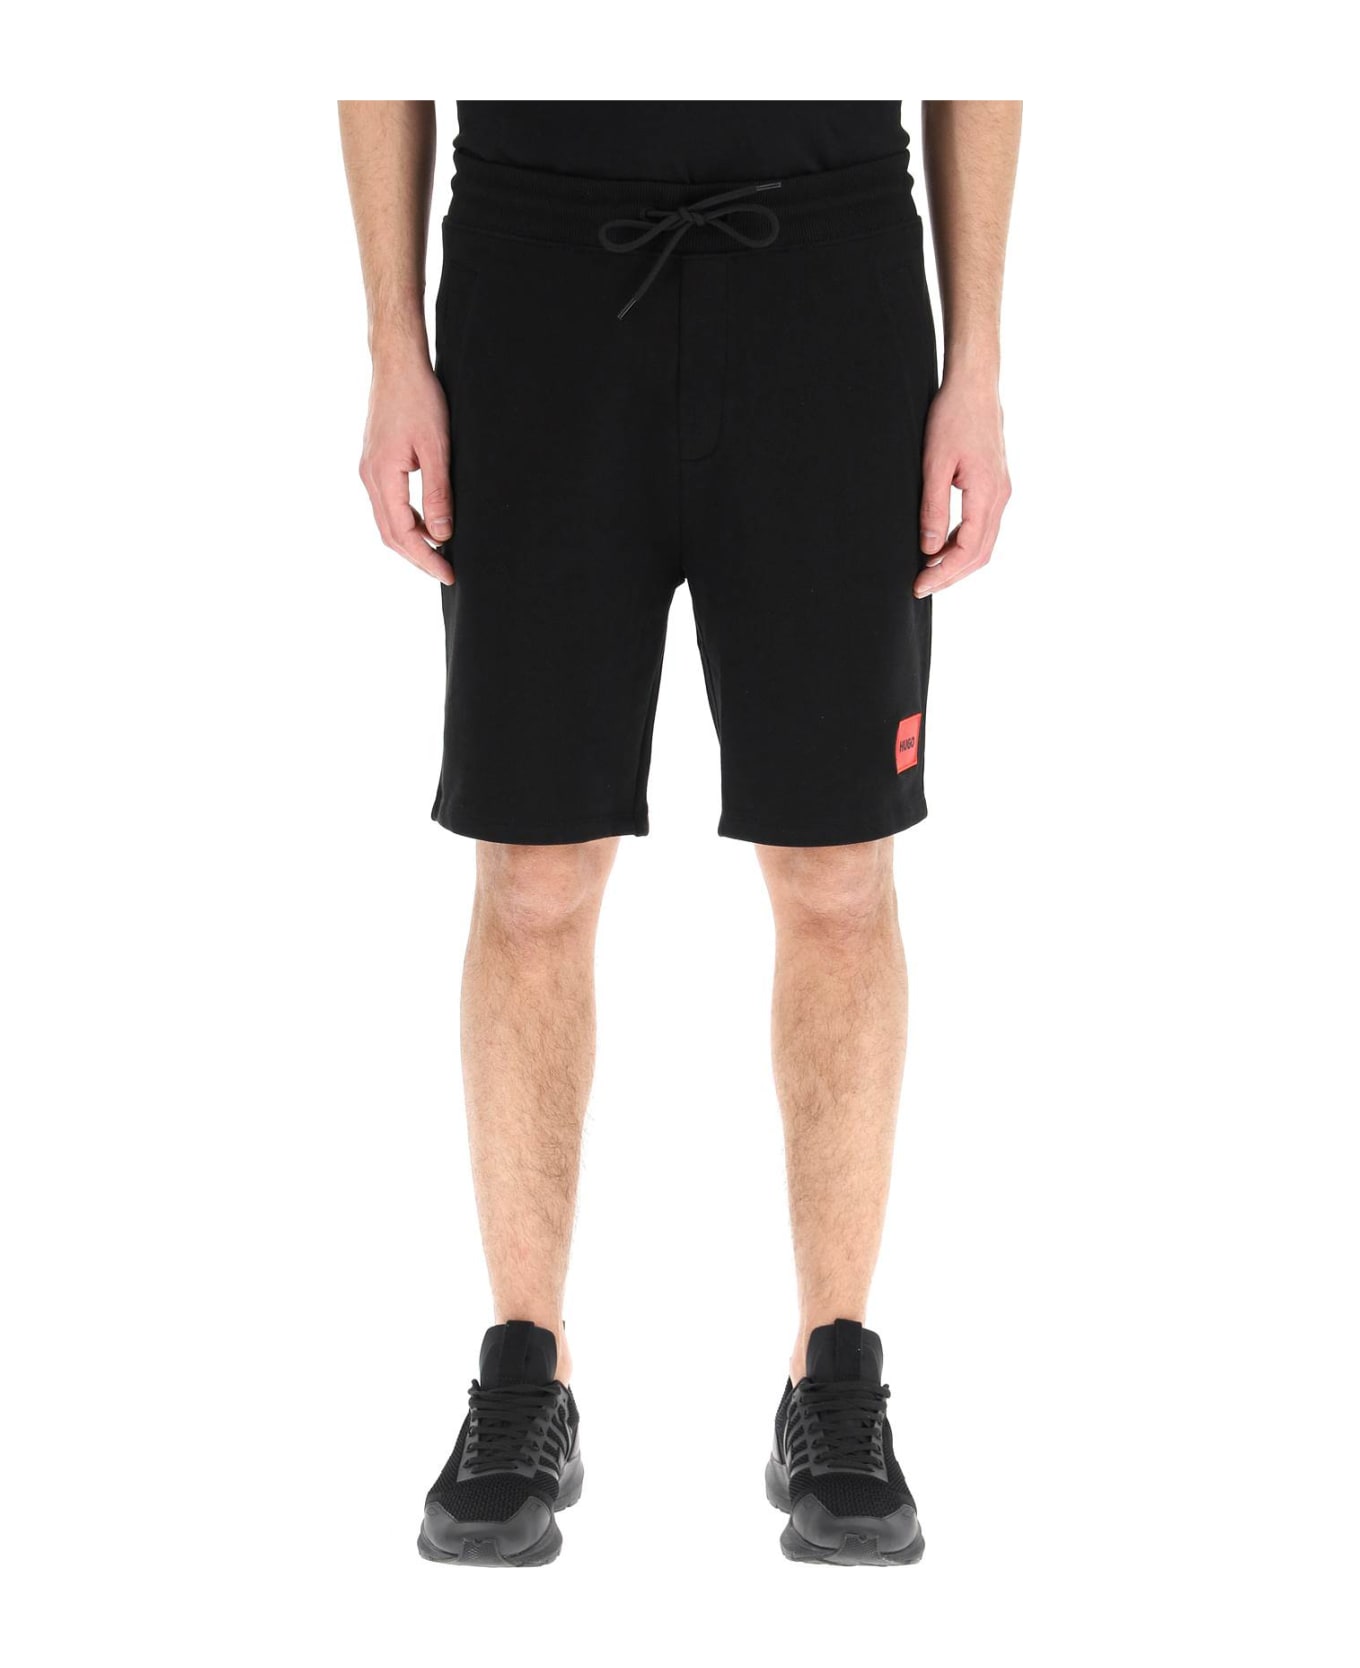 Hugo Boss Diz Sweat Shorts - BLACK 001 (Black) ショートパンツ